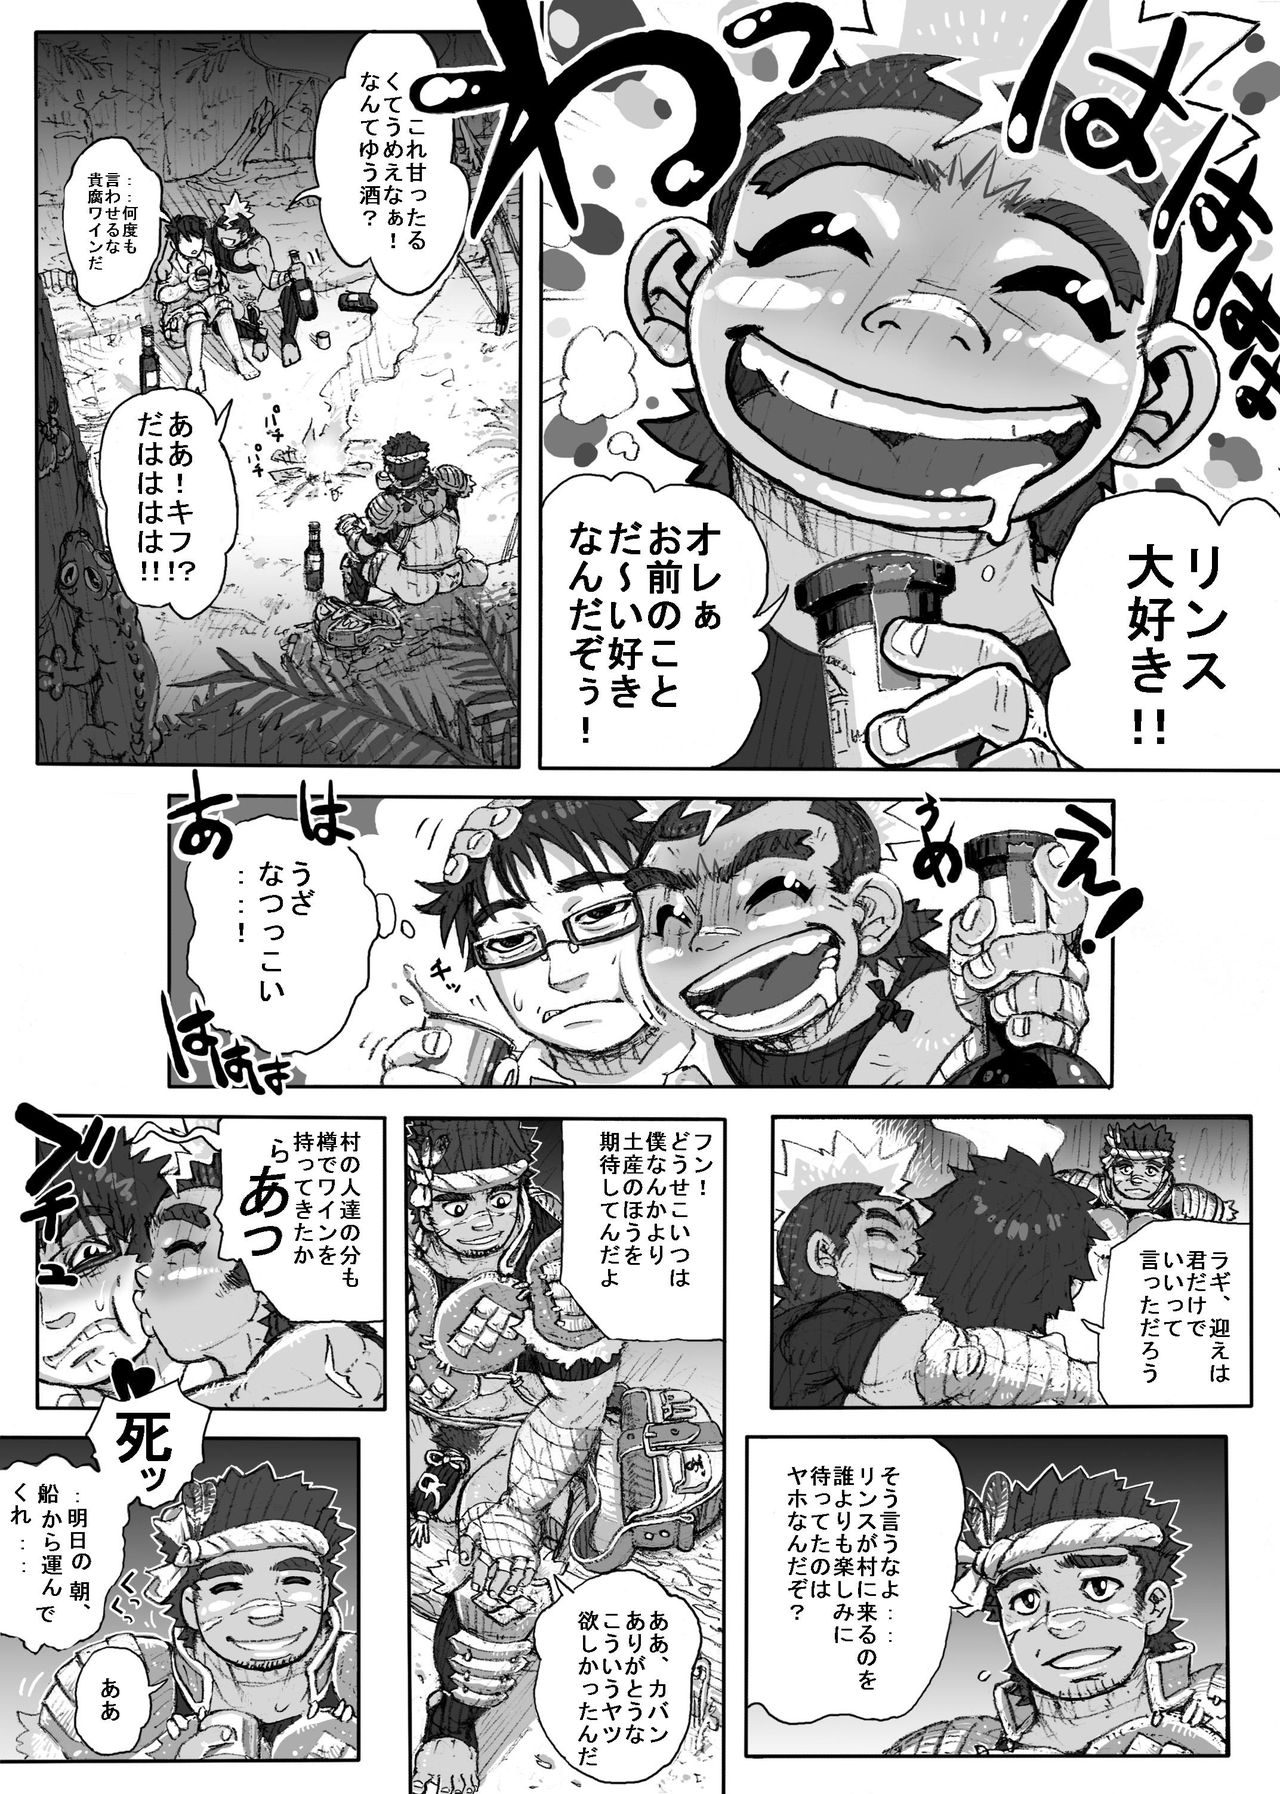 [Hastured Cake] Hepoe no Kuni kara 1 - Mizu no Gakusha Sensei, Hi no Buzoku no Saru ni Hazukashimerareru no Maki [ハスタードケーキ] ヘポエの国から1 水の学者先生、火の部族の猿に辱められるの巻